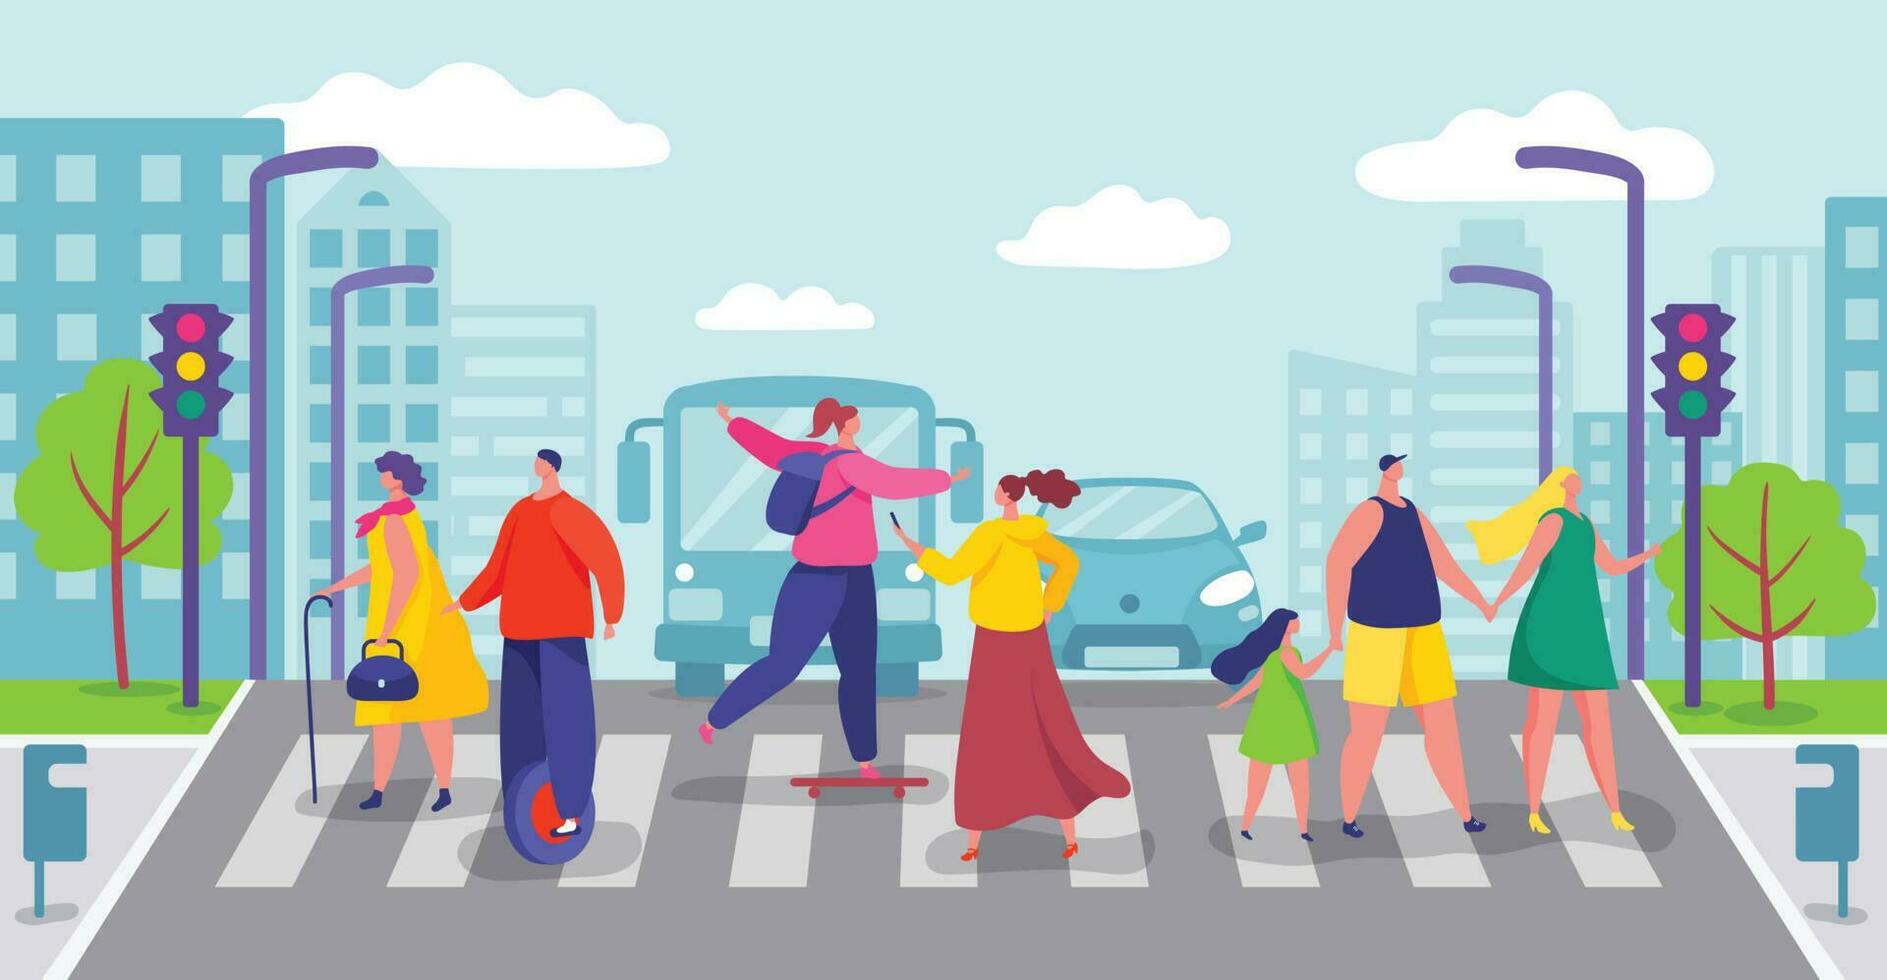 grupo de personas cruce ciudad camino, peatones caminando en paso de peatones. caracteres cruzar calle en peatonal cruce vector ilustración